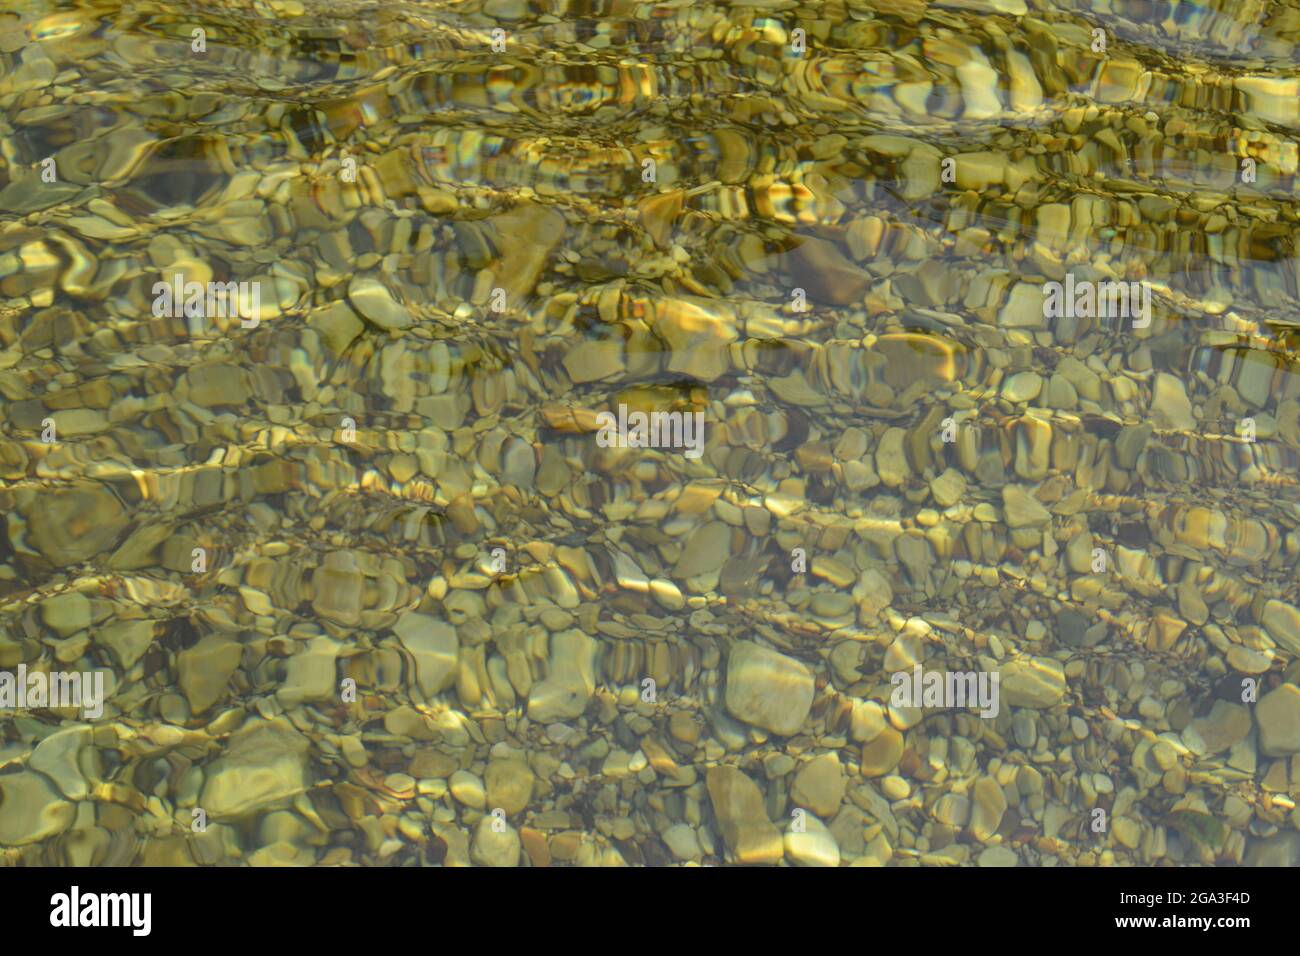 Transparentes Wasser mit runden Steinen auf einem Flussbett, das die Bewegung des Wassers darstellt. Capitolio, MG, Brasilien Stockfoto